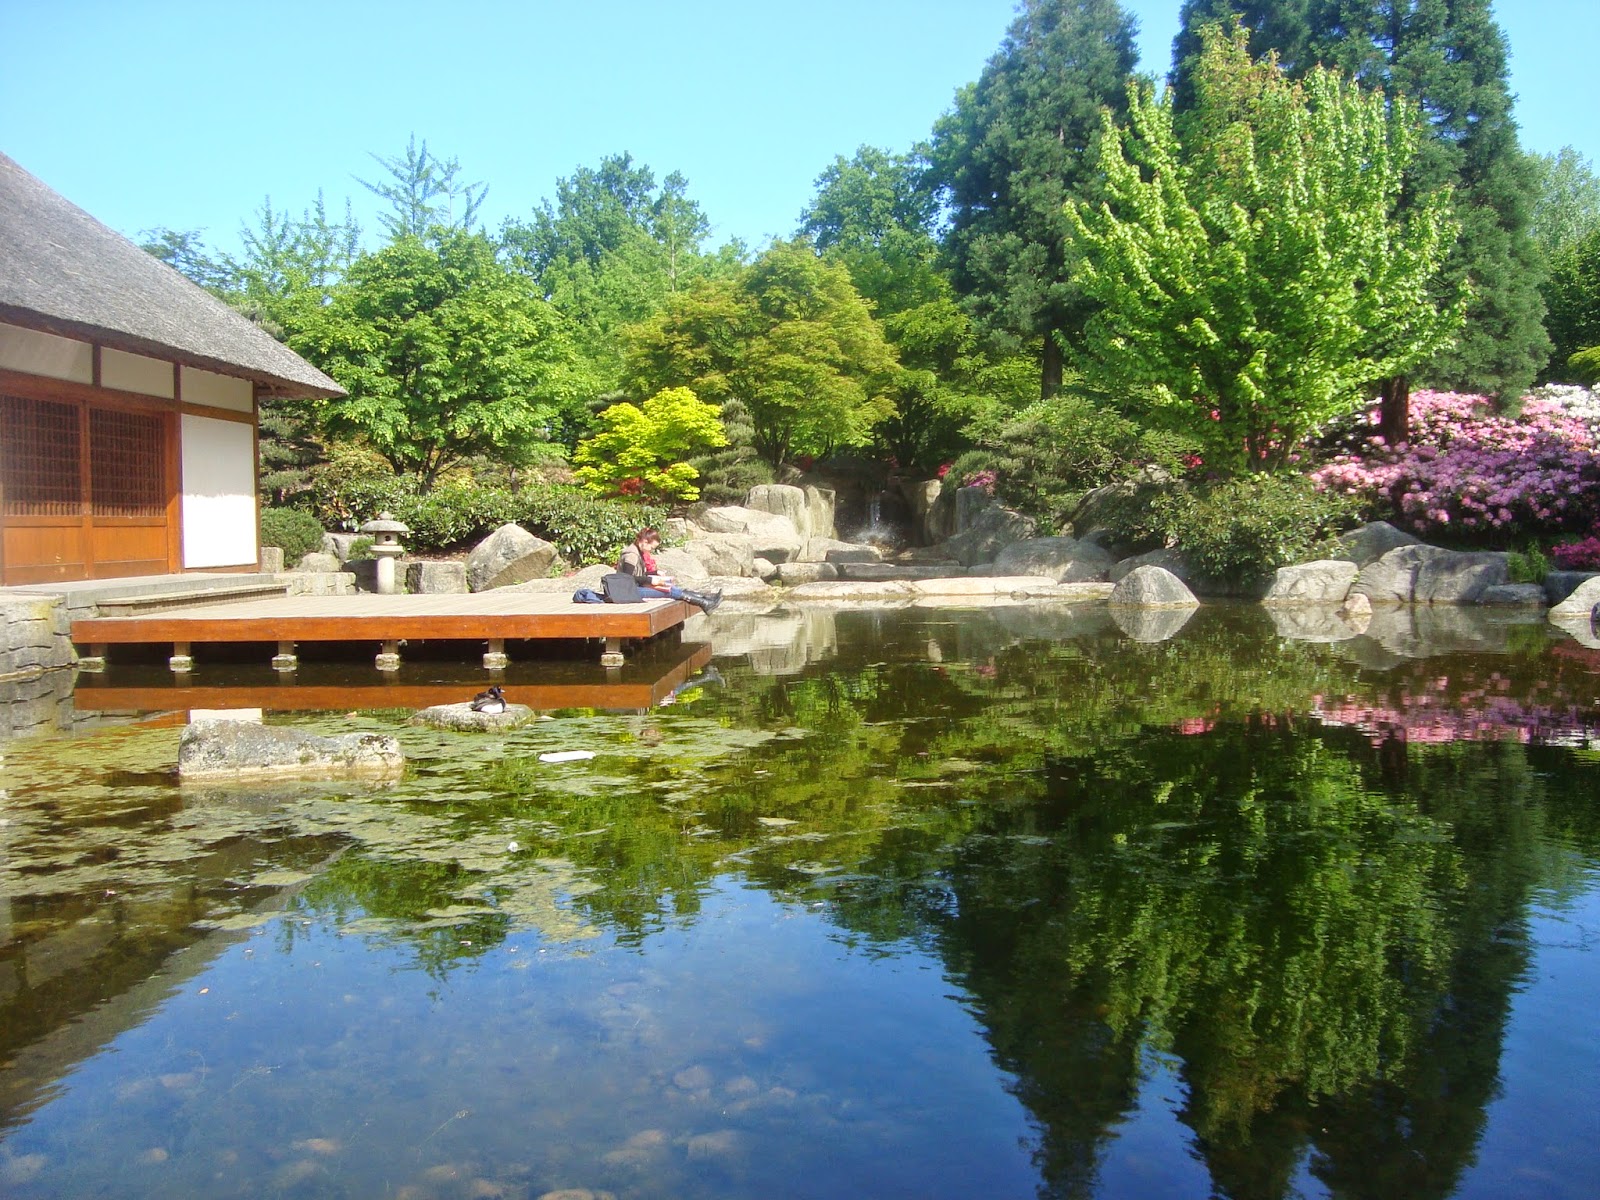  Κεντρική λίμνη Ιαπωνικού κηπου